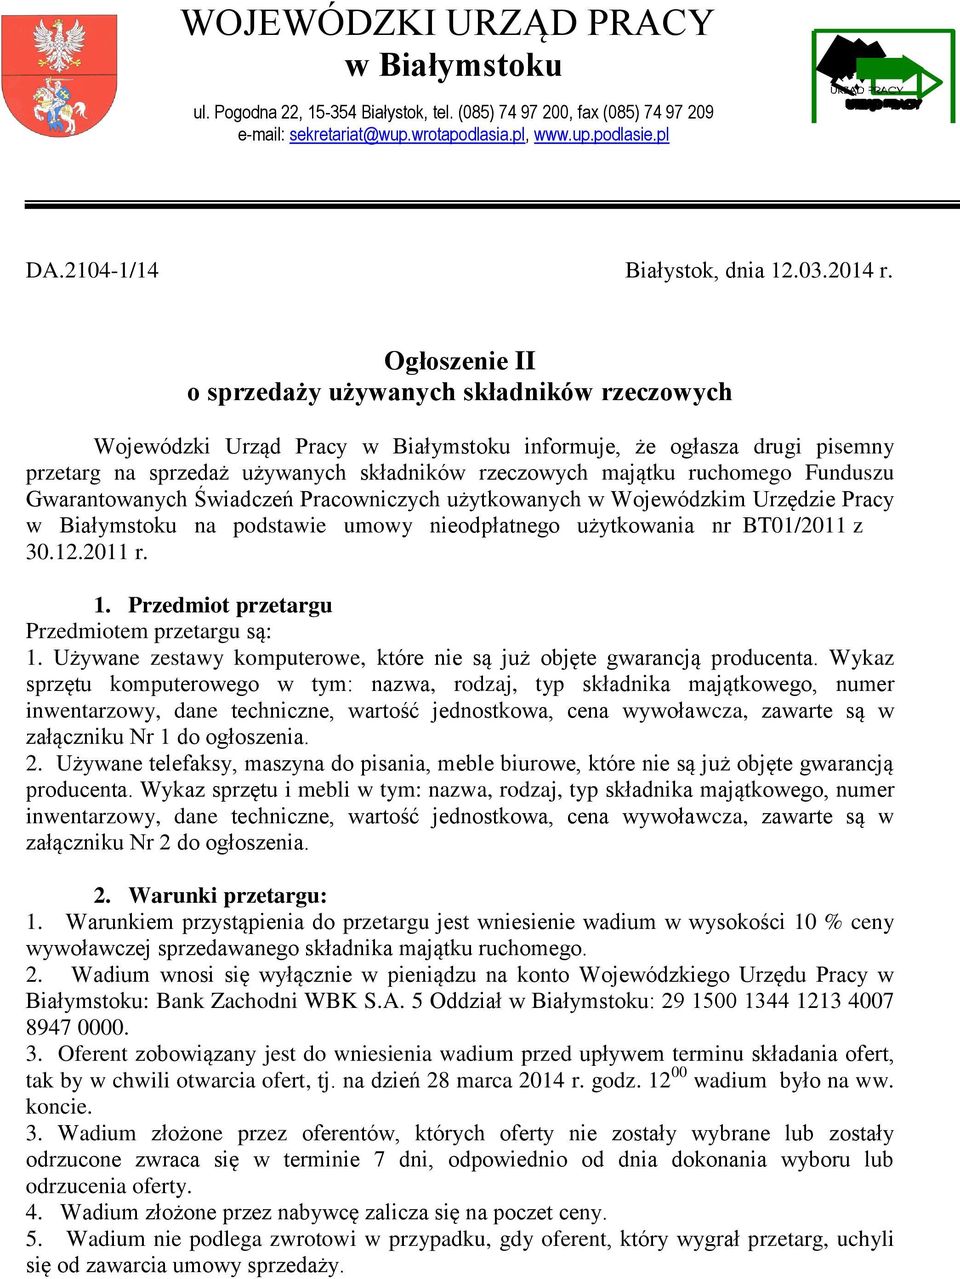 Ogłoszenie II o sprzedaży używanych składników rzeczowych Wojewódzki Urząd Pracy w Białymstoku informuje, że ogłasza drugi pisemny przetarg na sprzedaż używanych składników rzeczowych majątku